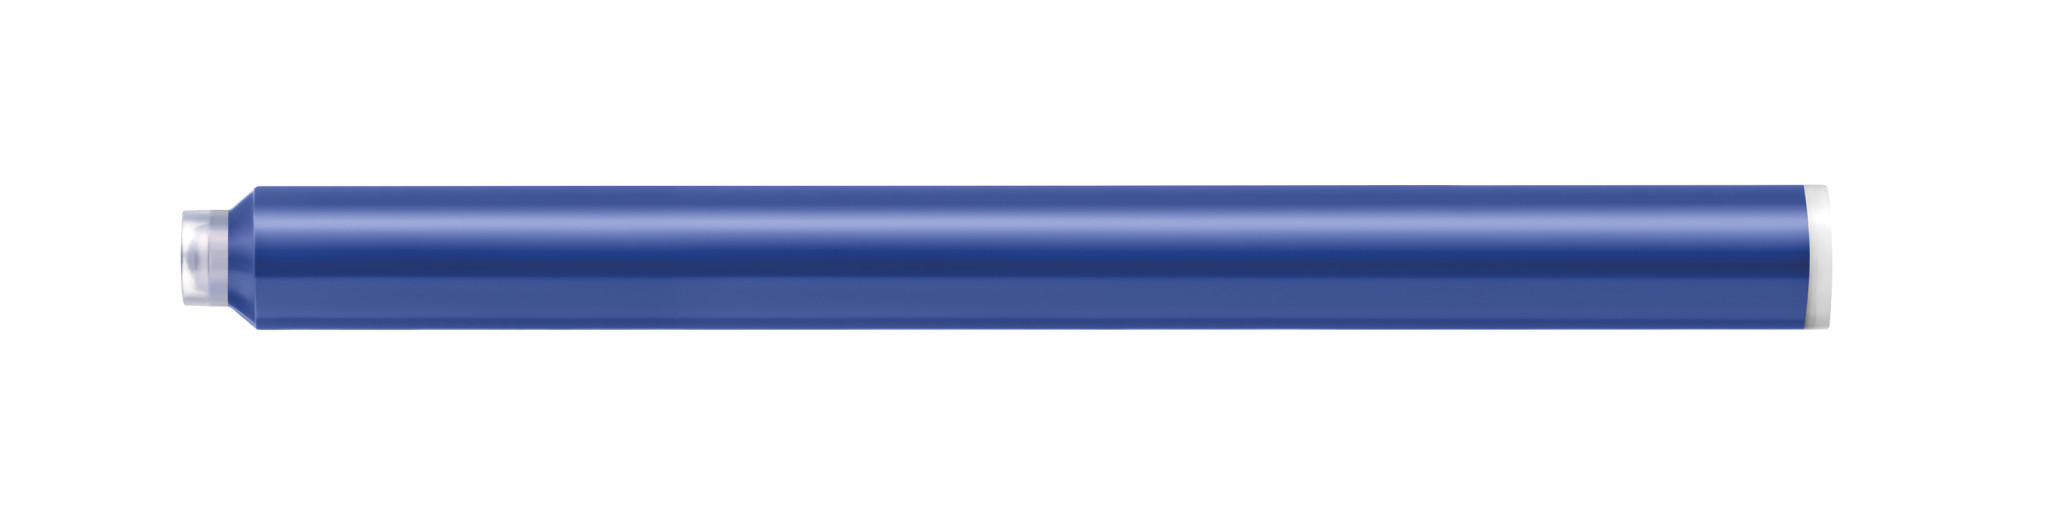 Pelikan | Tintenpatrone 4001 Großraum ilo GTP/5 königsblau